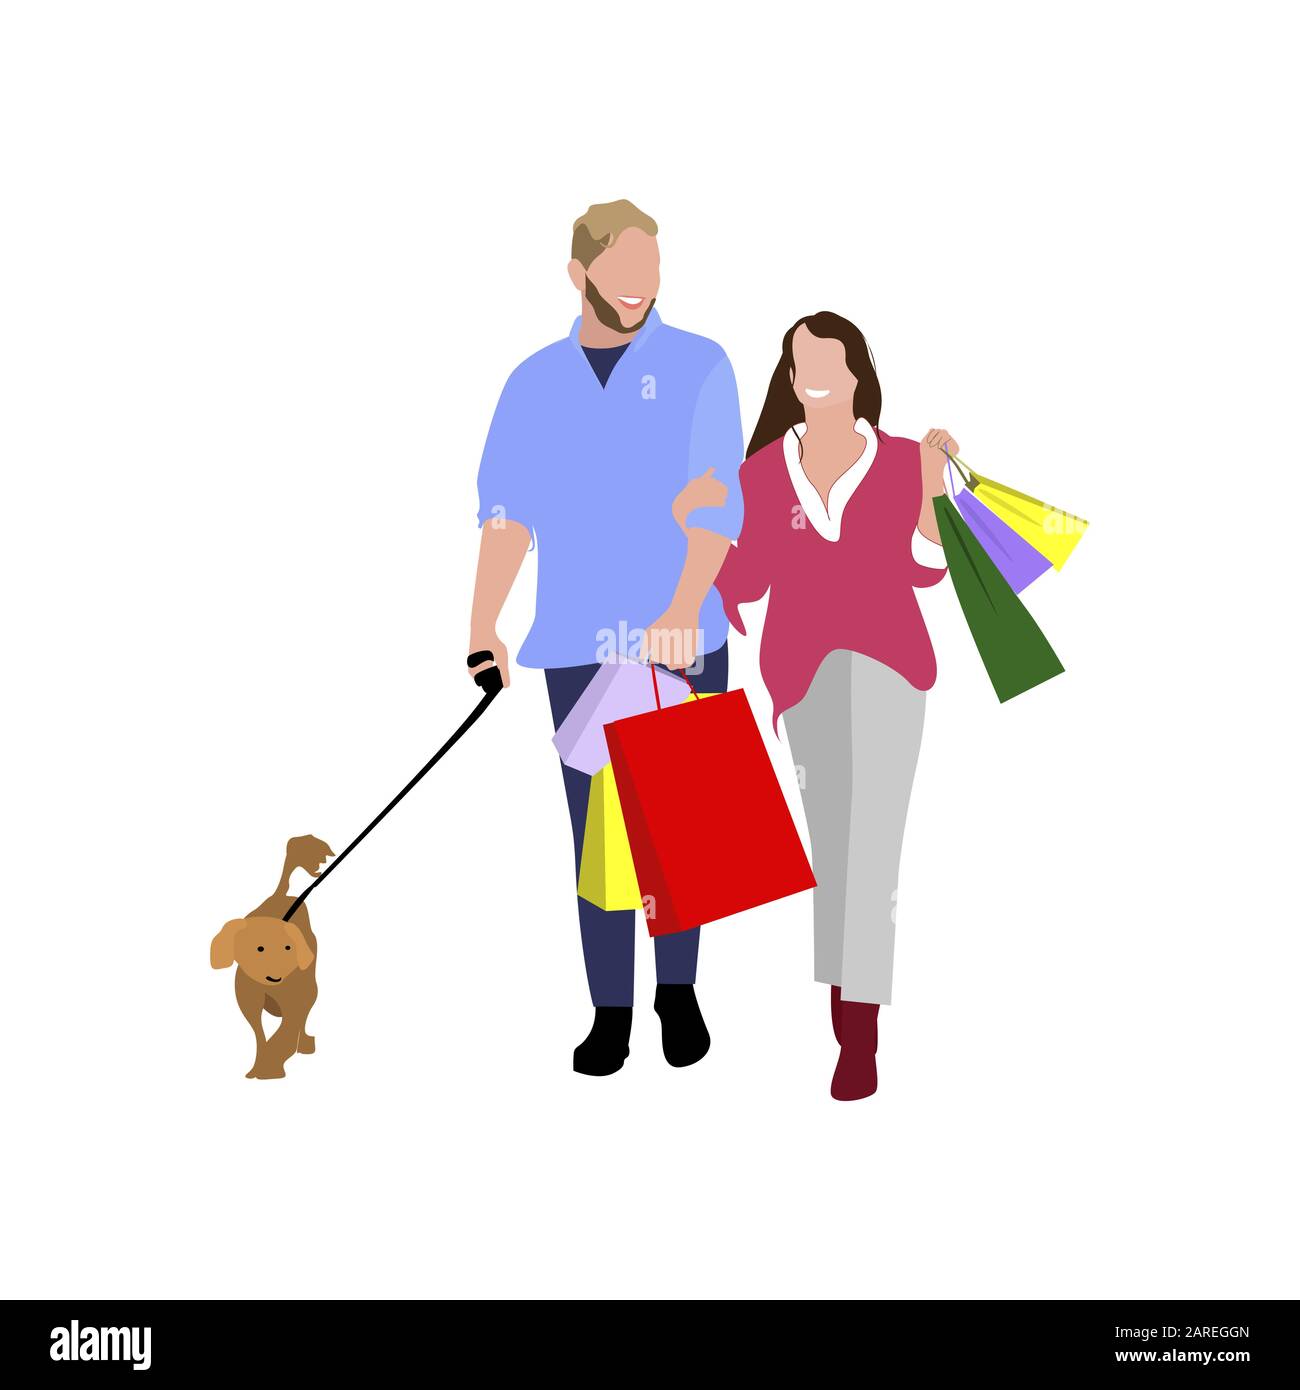 Männer und Frauen kaufen ein. Paar mit Käufen und Hund. Paar und Hund mit Kauf nach Einkaufs-Illustration Stock Vektor